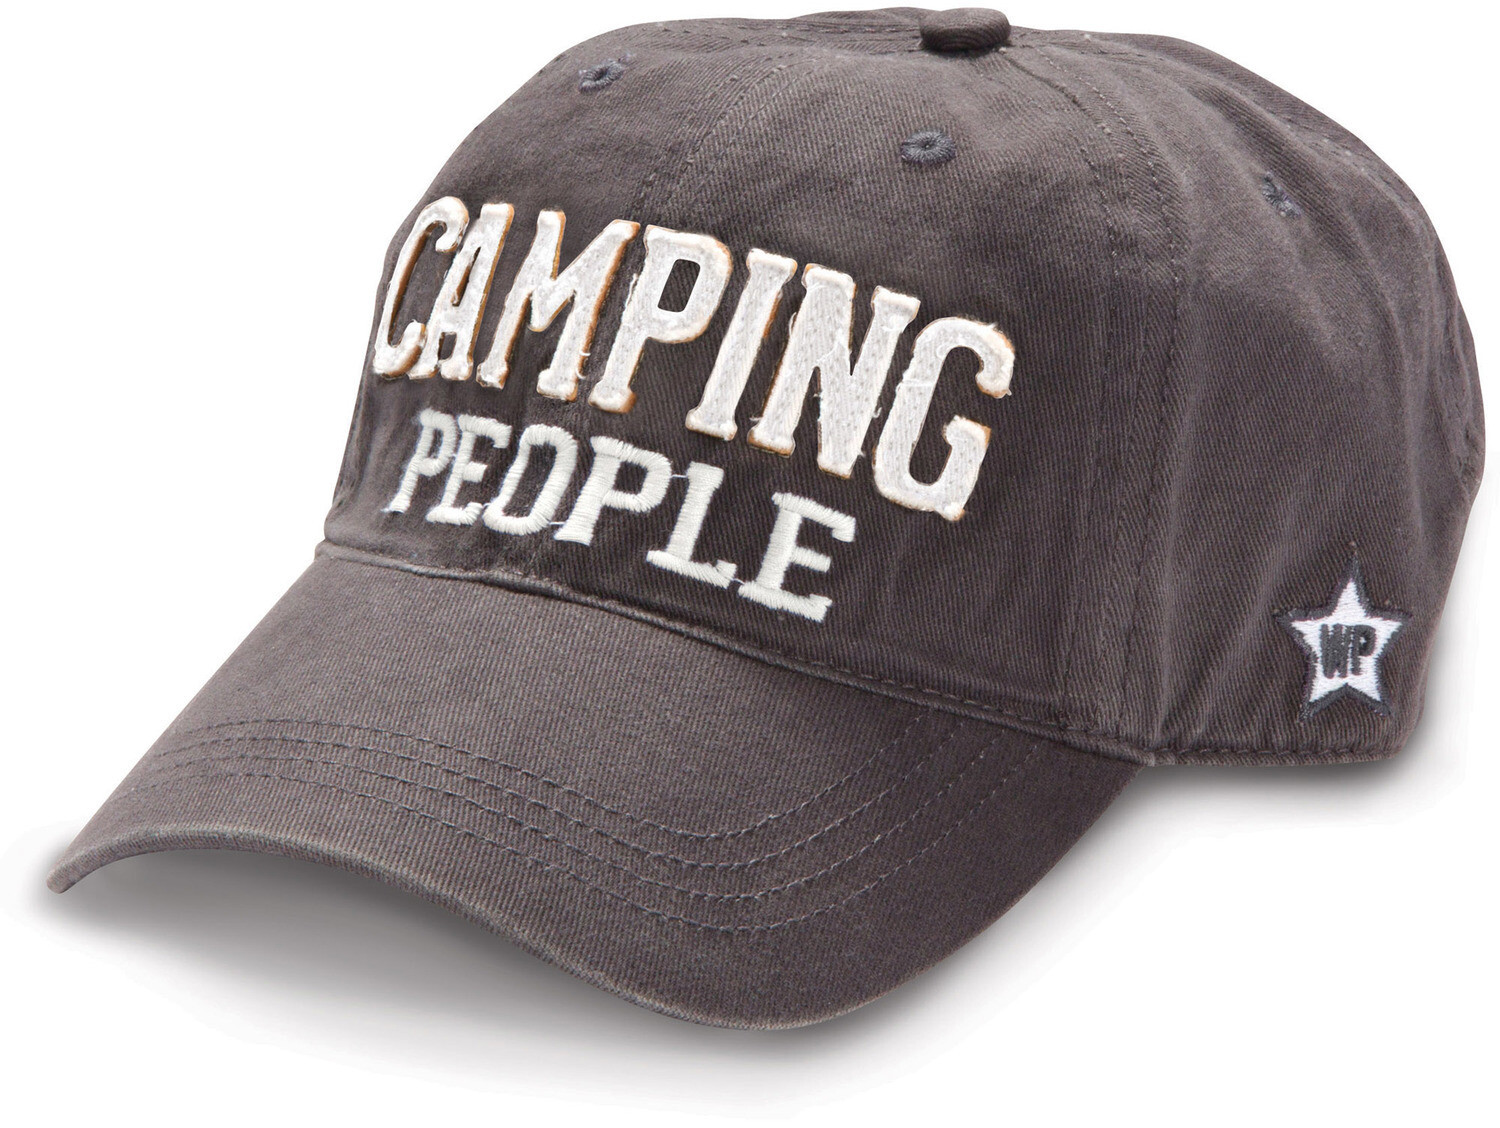 We People  - Camping People Hat - Dark Grey